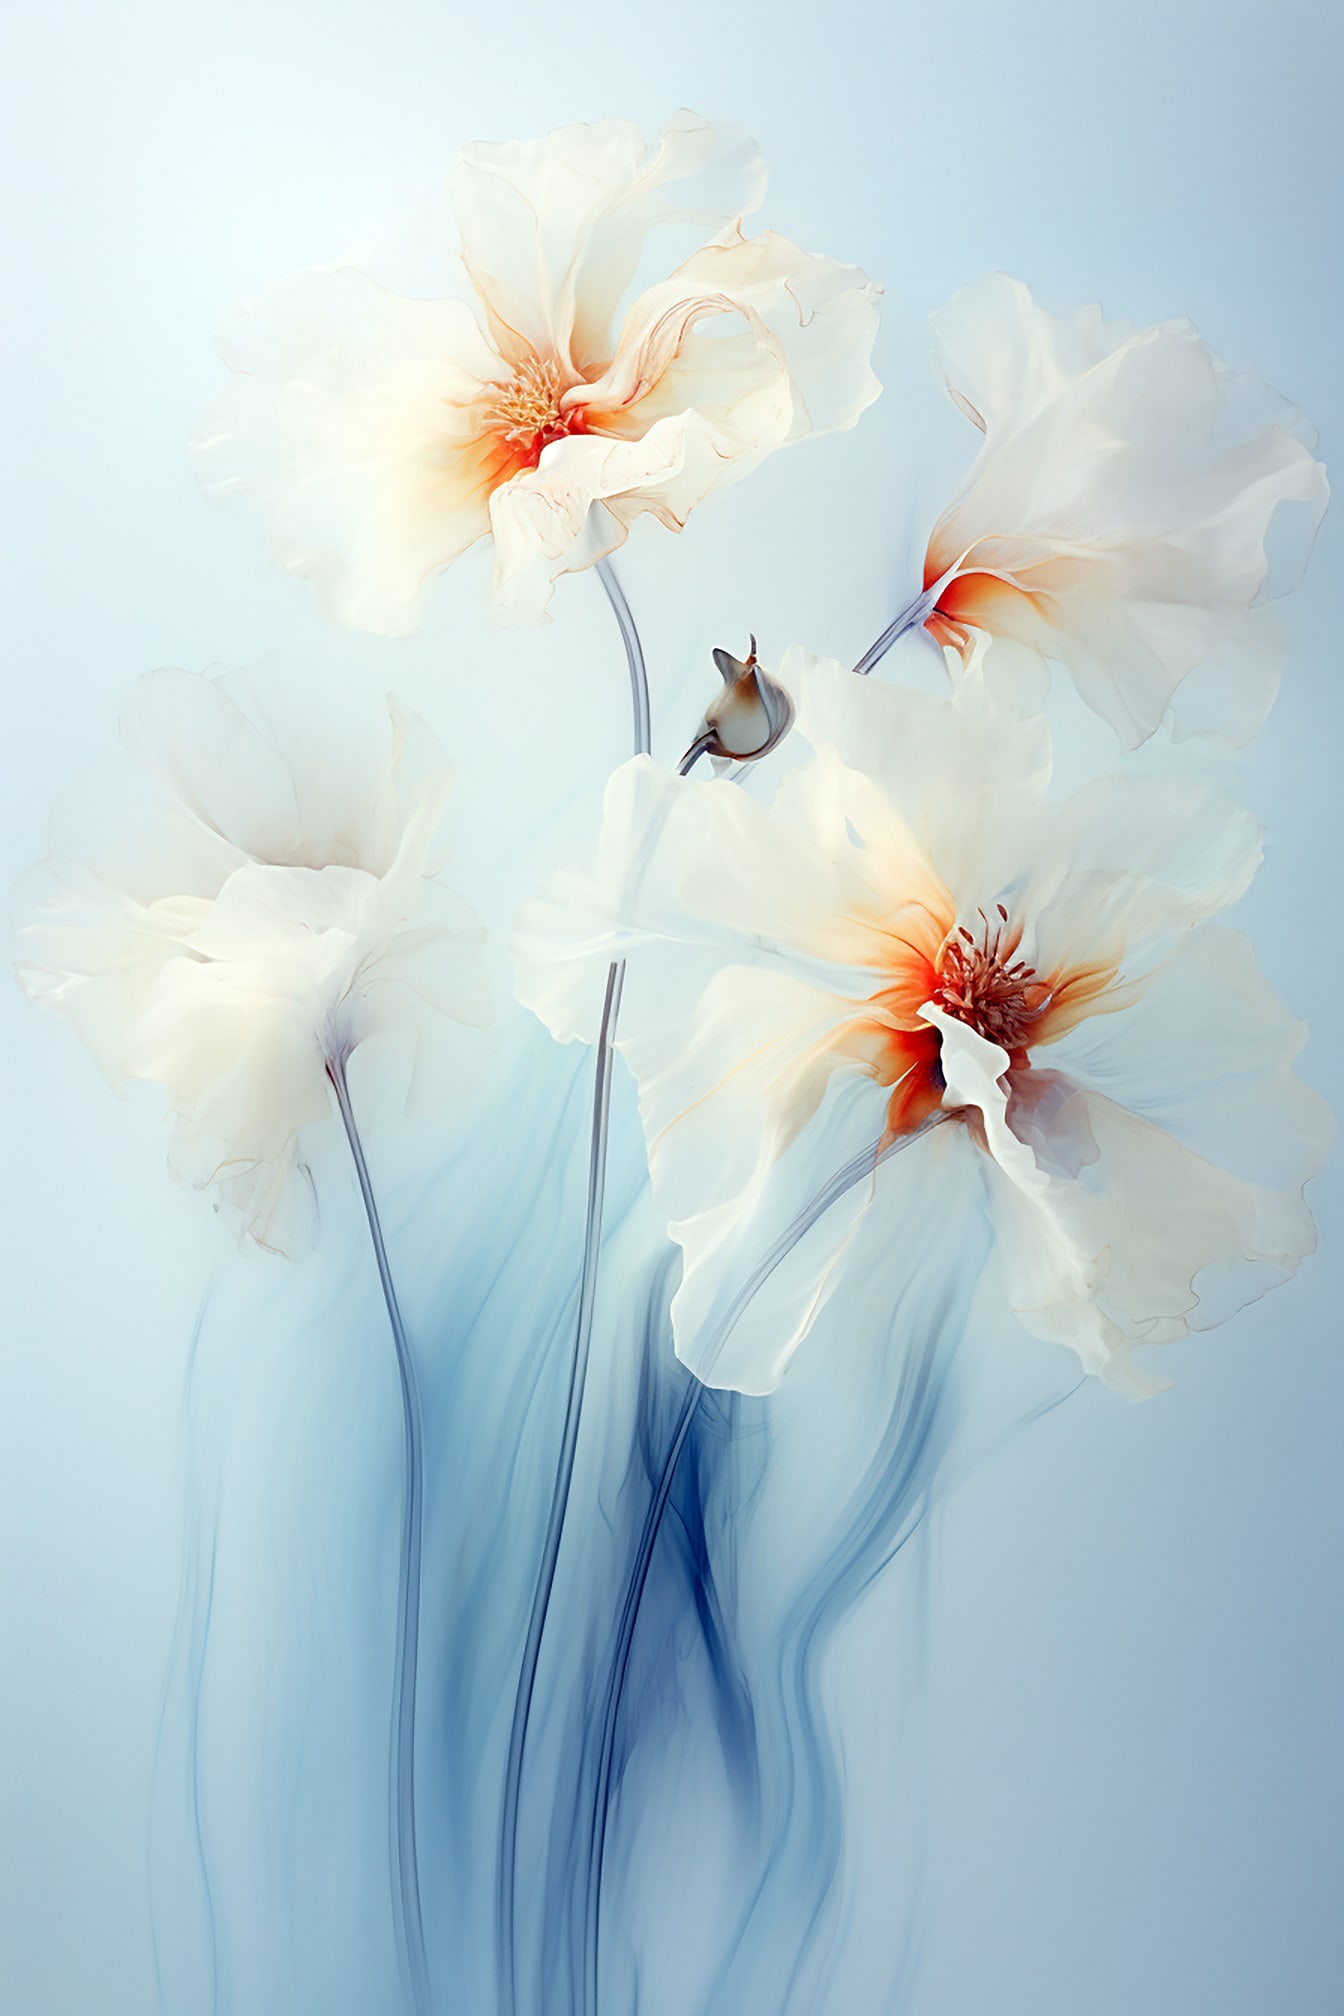 Pastelni akvarel ilustracija bijelog cvijeća na plavoj pozadini